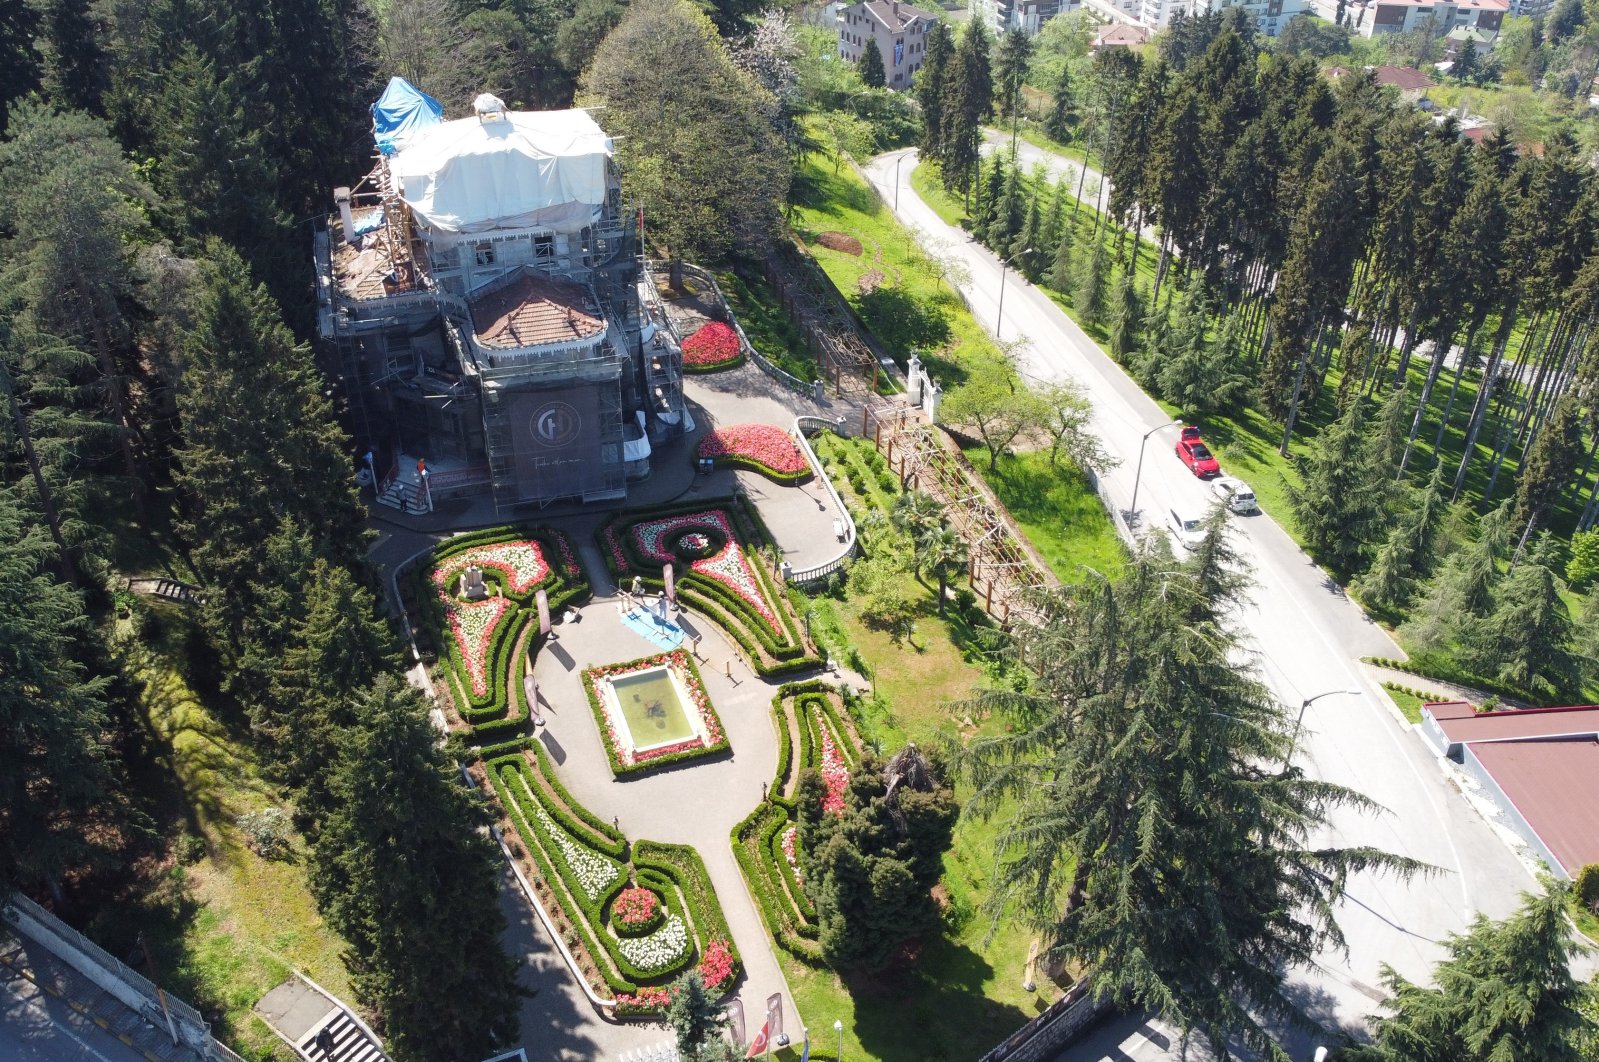 Rumah Atatürk yang ikonik di Trabzon Türkiye mengalami renovasi besar-besaran